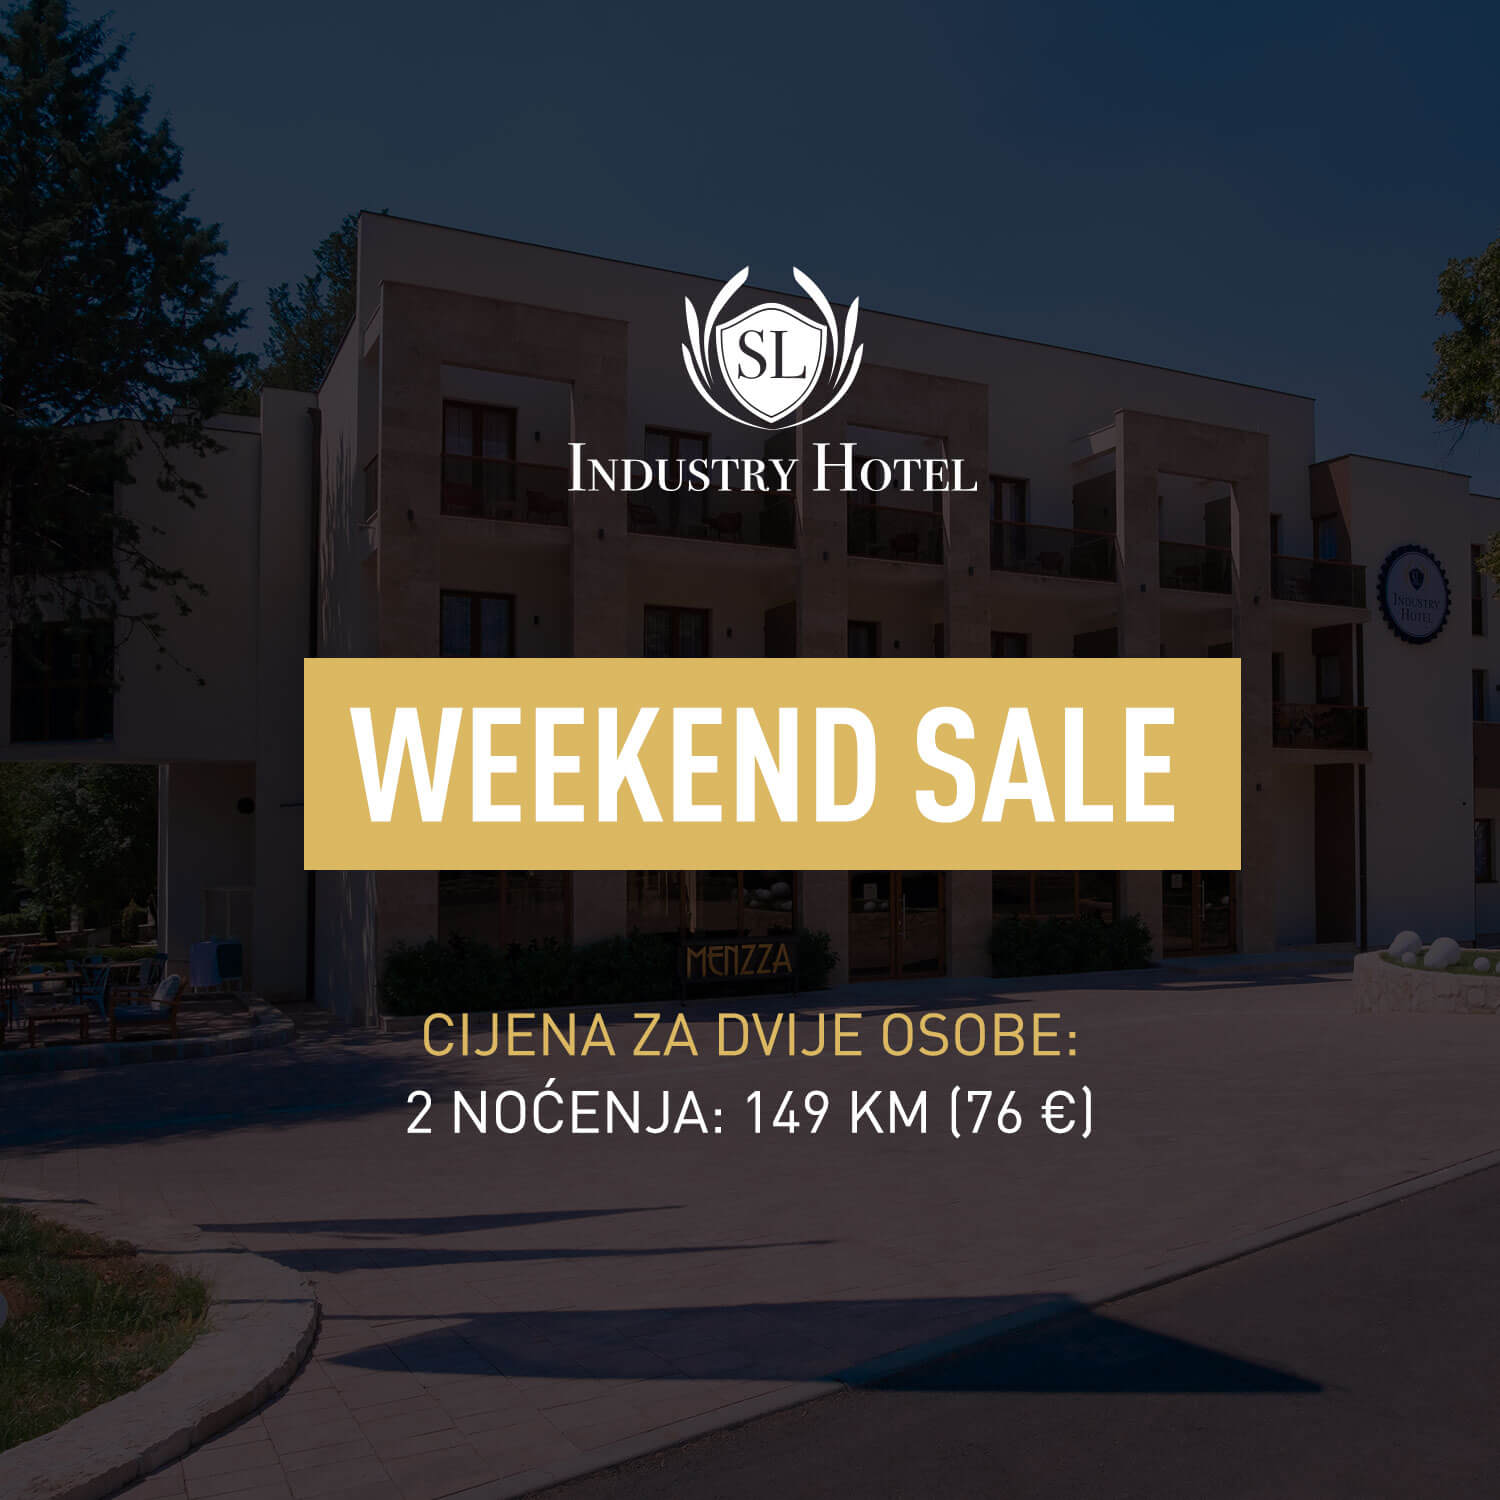 Hotel Industry - Weekend sale